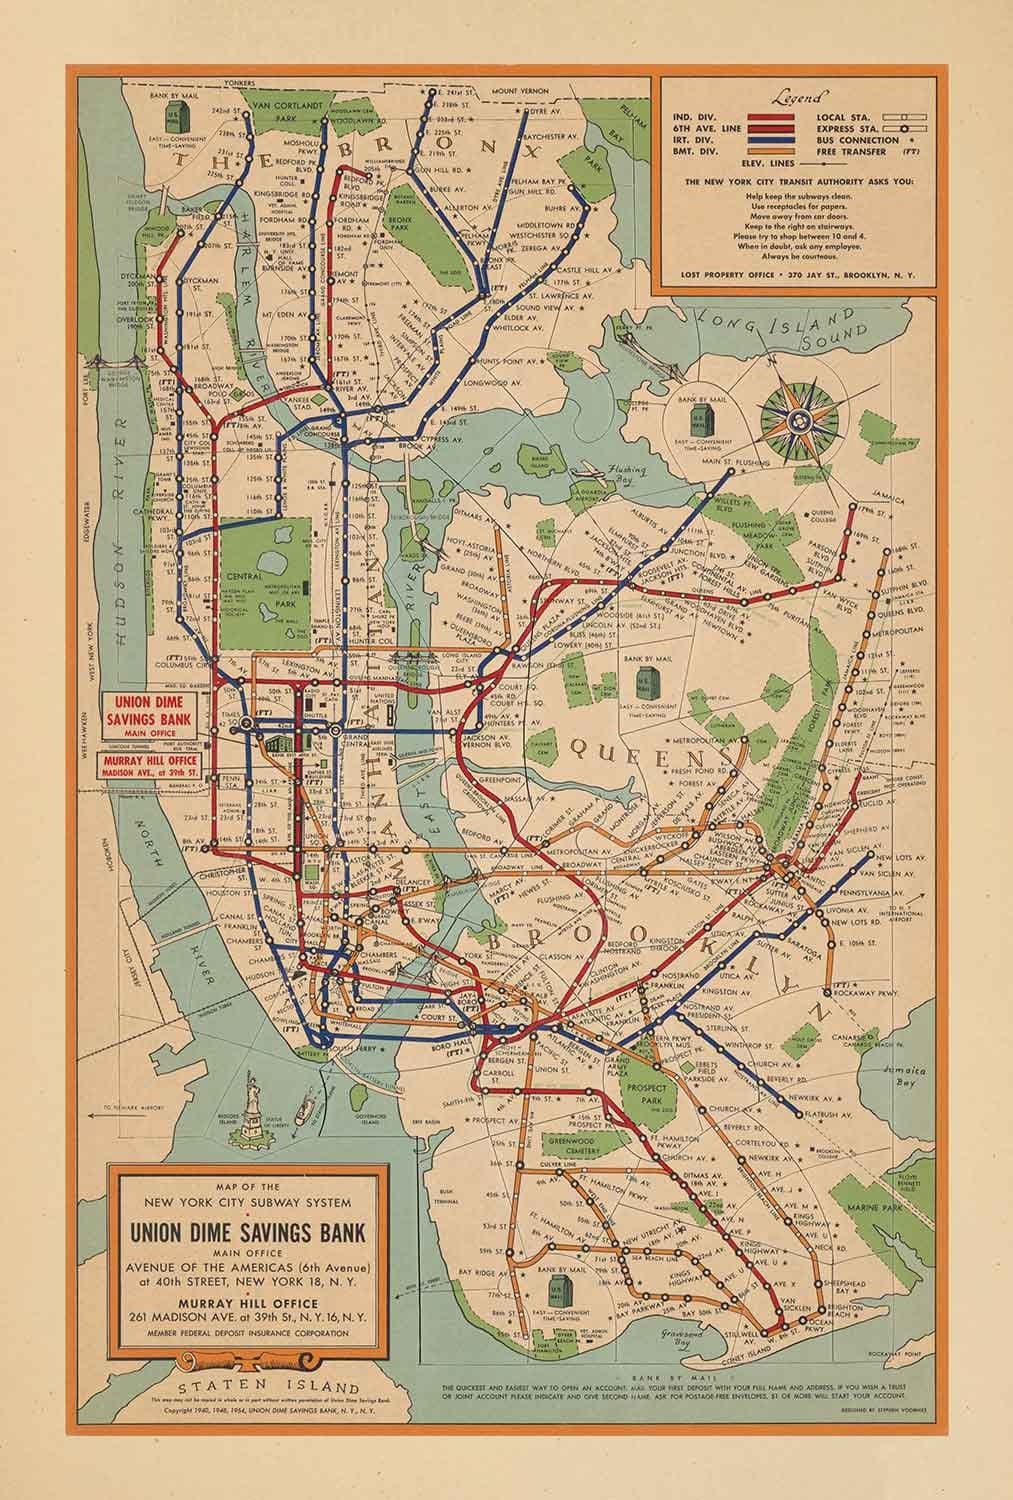 Alte U-Bahn-Karte von New York City, 1954 von Voorhies - Queens, Brooklyn, Manhattan, IND, IRT, BMT Rail Lines